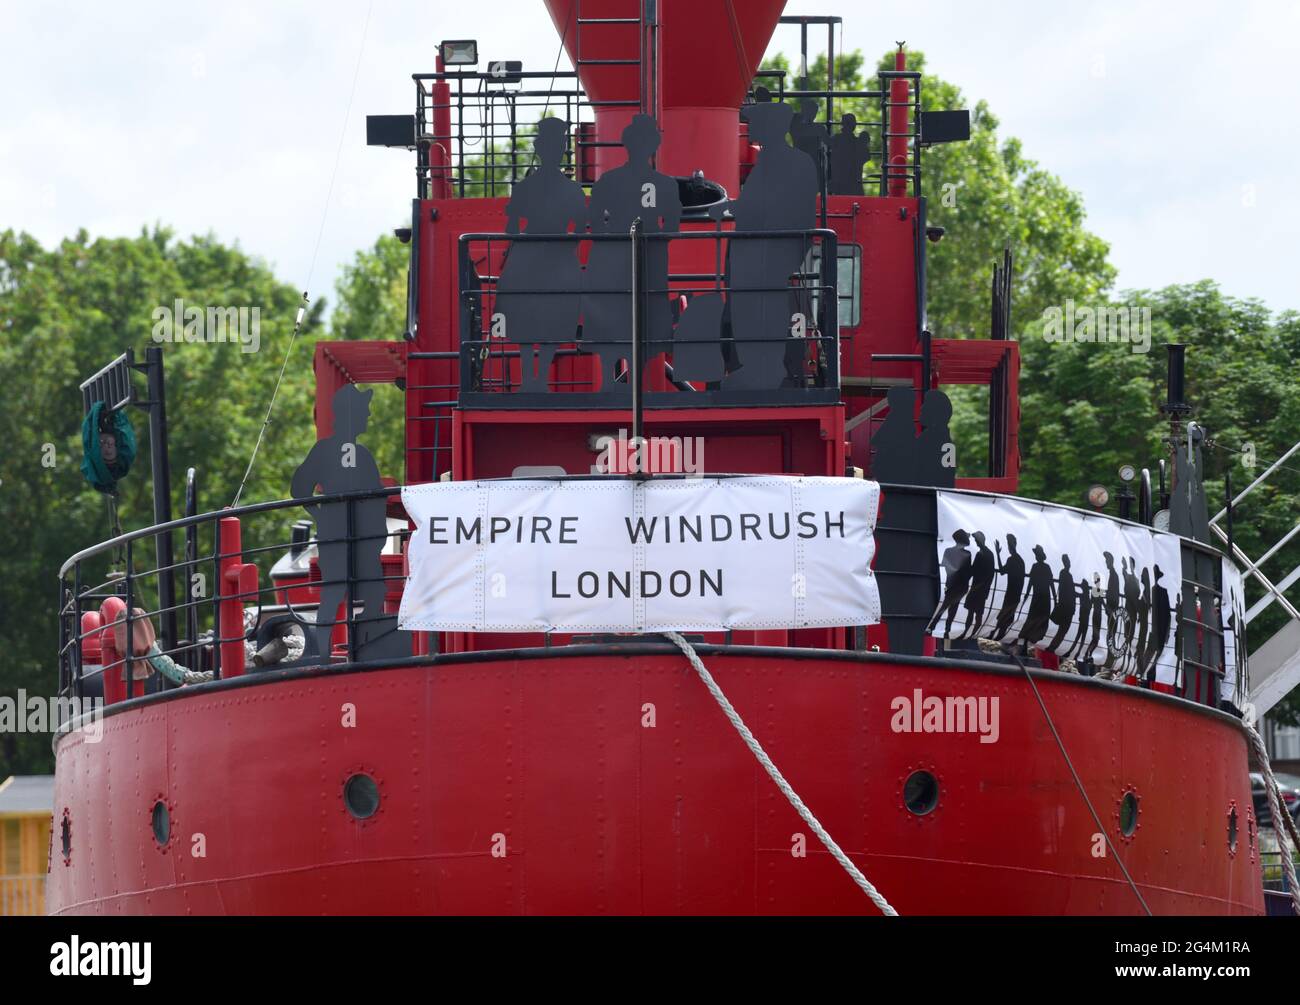 22/06/2021 Gravesend UK pour célébrer et commémorer l'arrivée de la génération Windrush sur l'Empire SS Windrush, et leur contribution à la r Banque D'Images